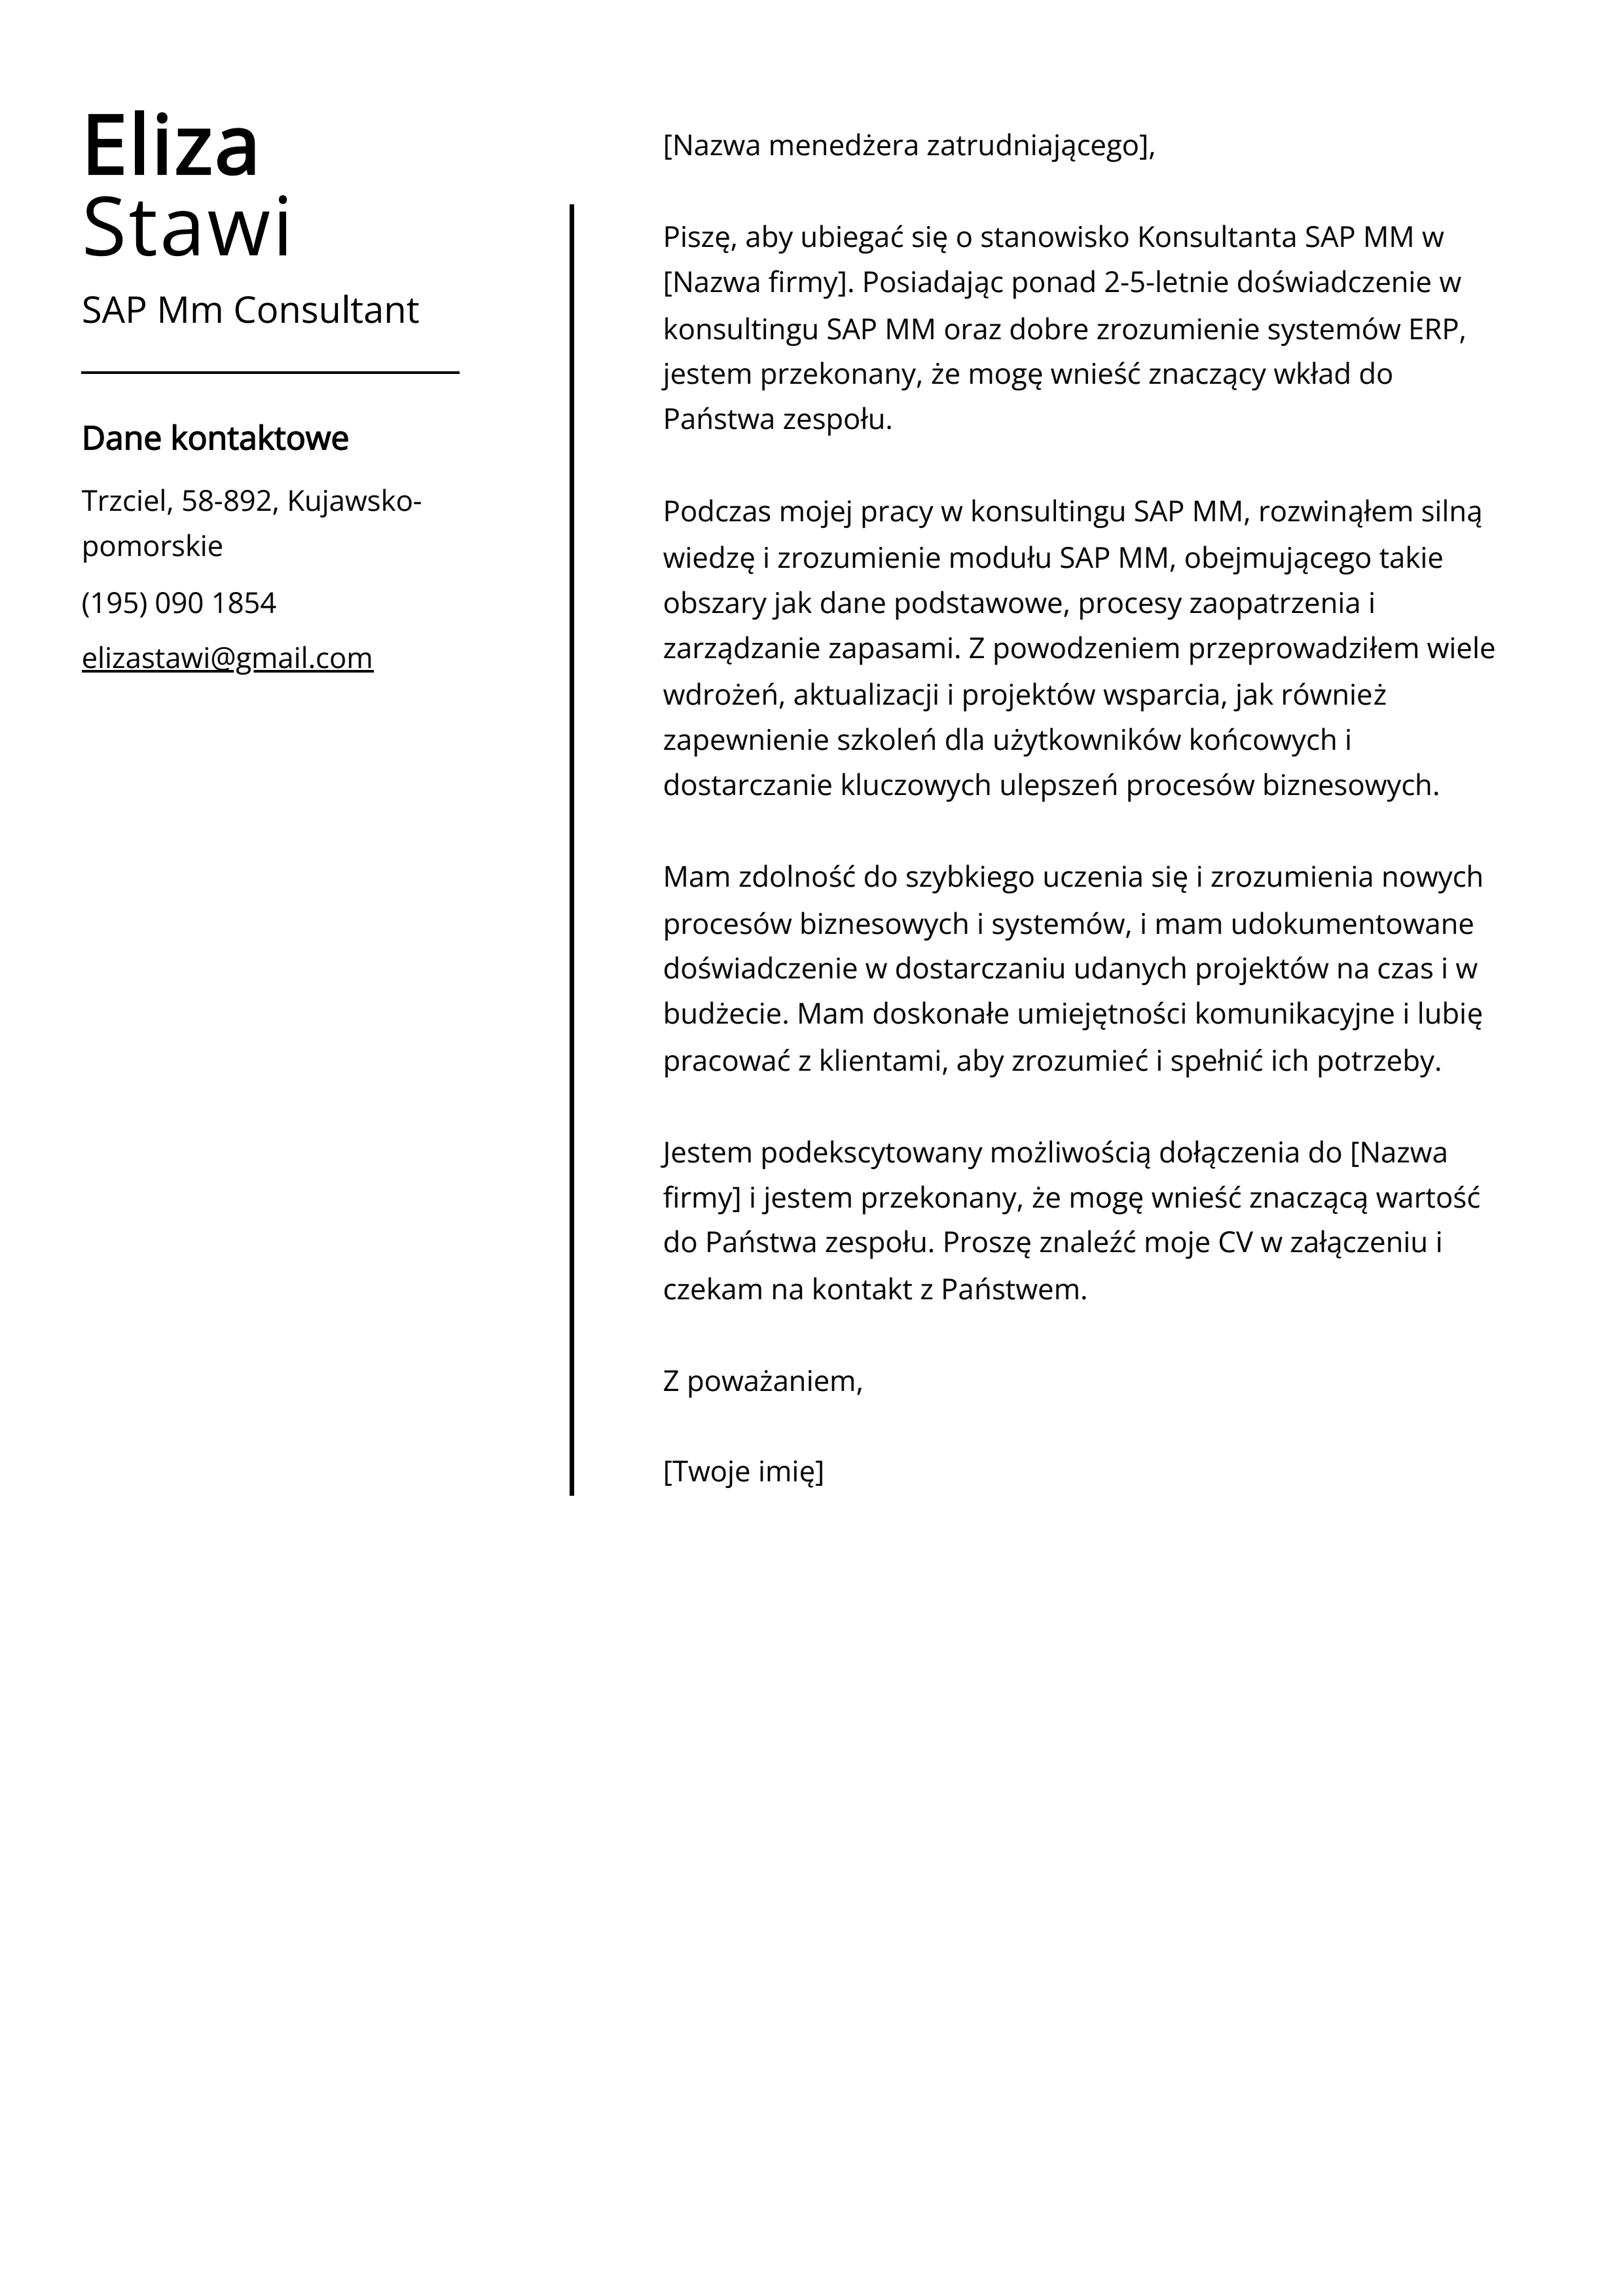 Przykład listu motywacyjnego SAP Mm Consultant